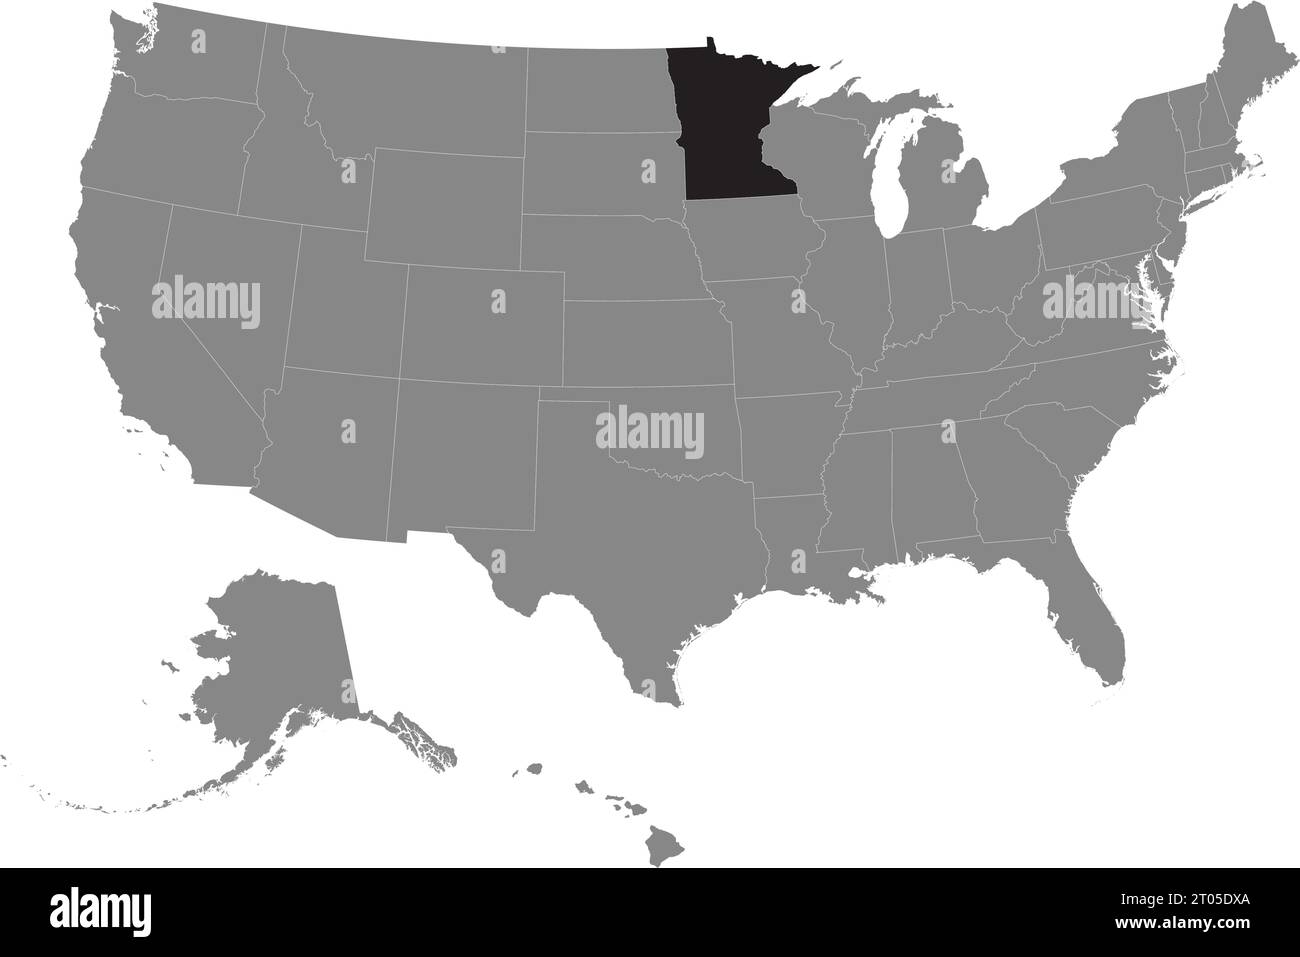 Schwarze CMYK-Bundeskarte von MINNESOTA in detaillierter grauer, leerer politischer Karte der Vereinigten Staaten von Amerika auf transparentem Hintergrund Stock Vektor